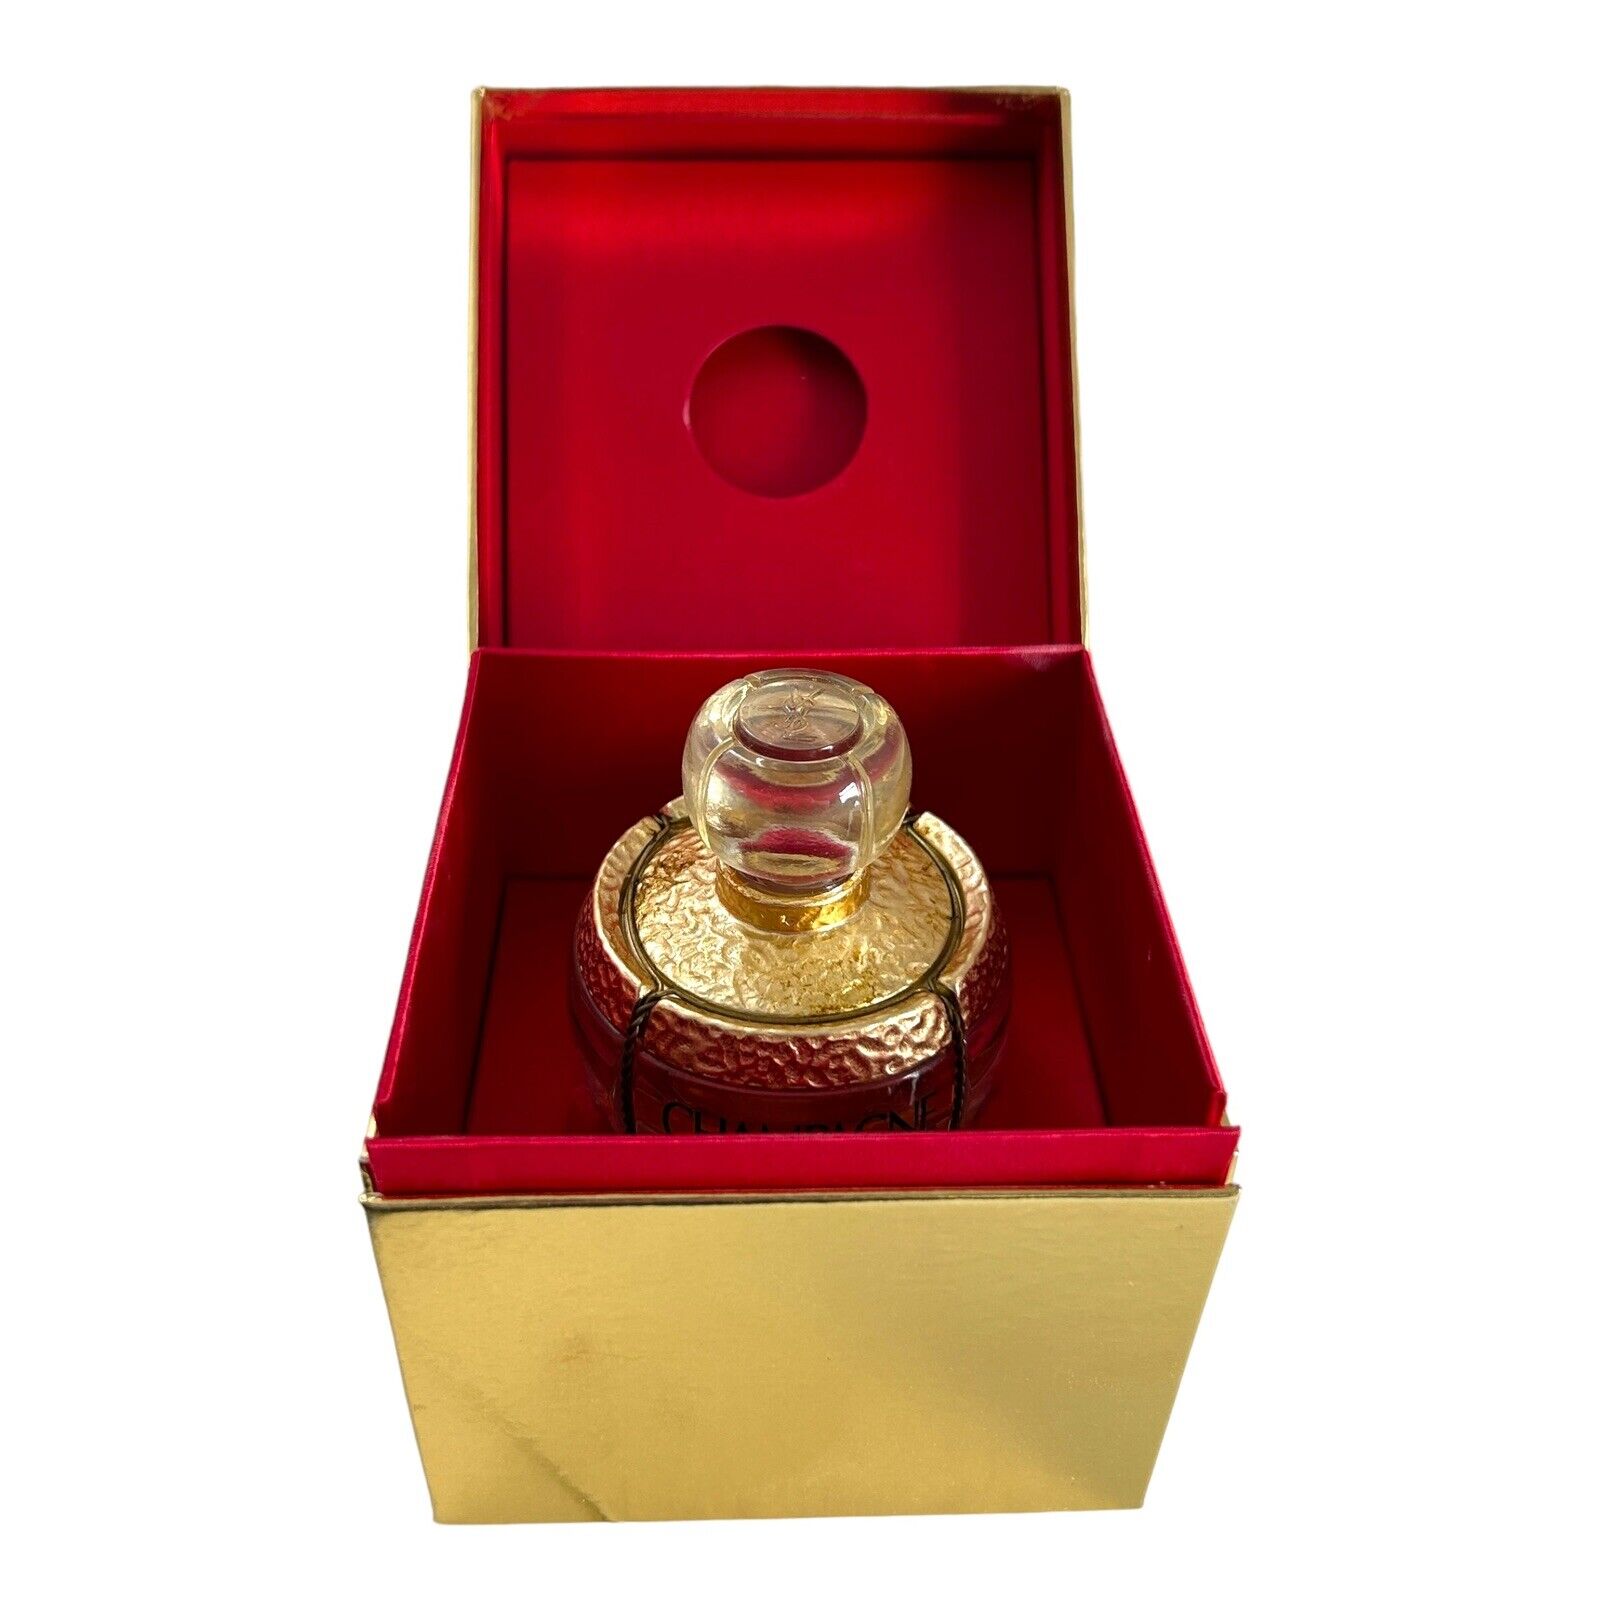 Vintage Champagne by YSL Eau de Toilette 1 oz Eau De Parfum Presentation Box SEE